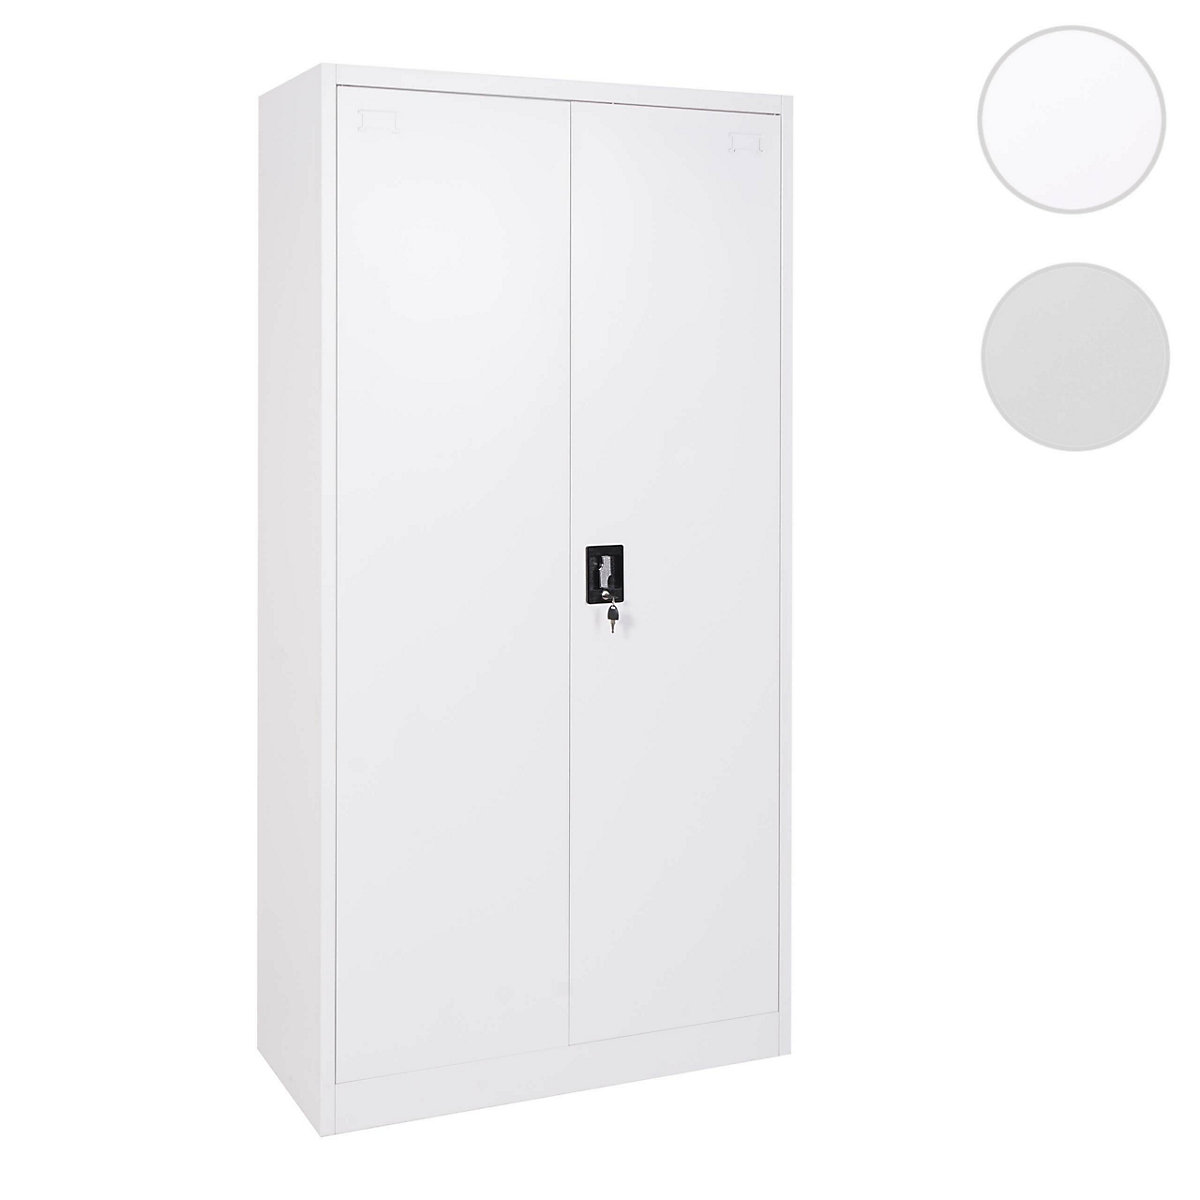 Aktenschrank mit 2 Türen, 185x90cm, weiß, HWC Mendler | yomonda